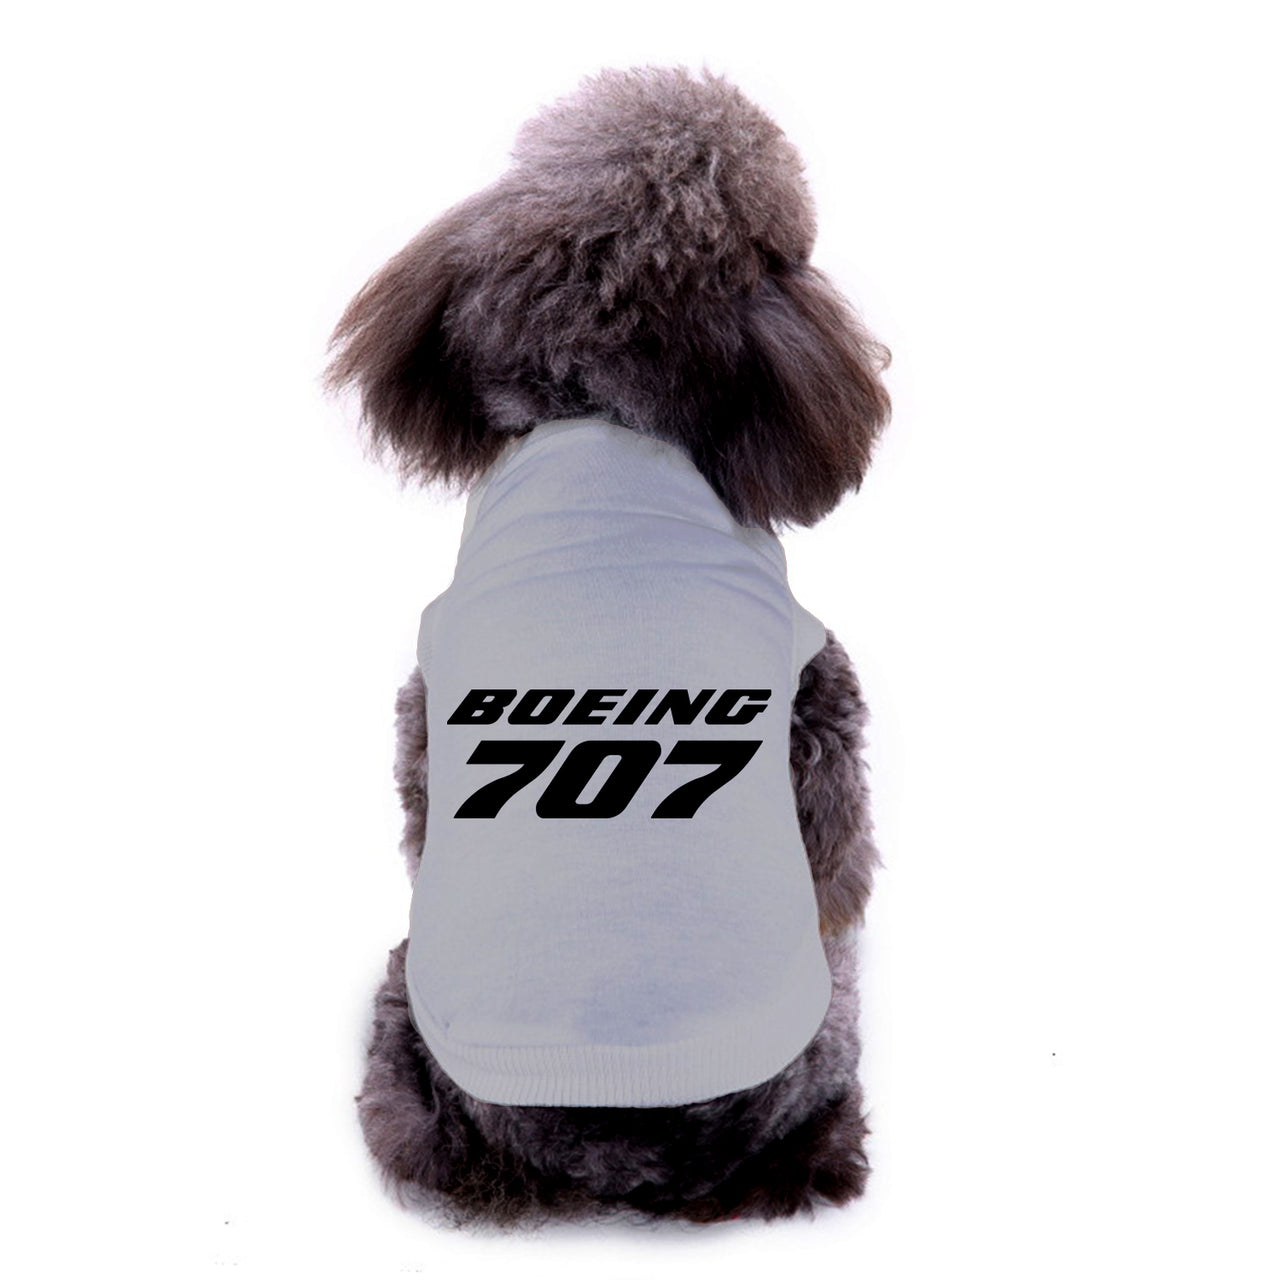 Boeing 707 & Text Designed Dog Pet Vests